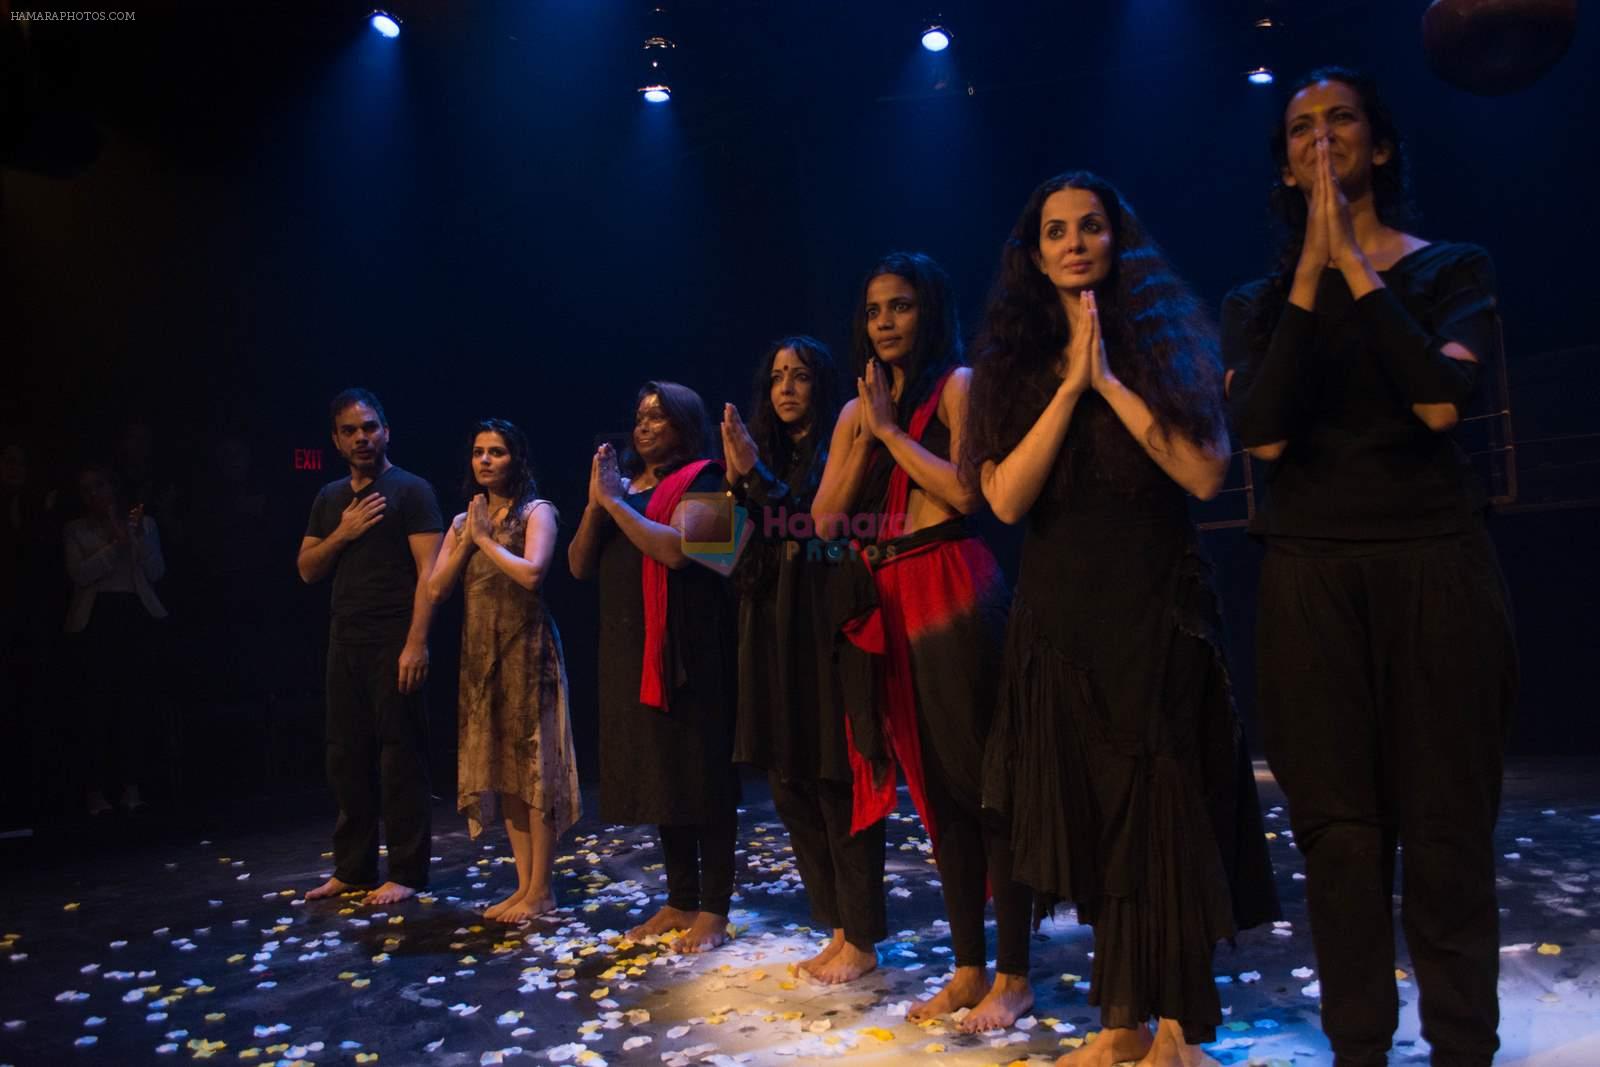 Ankur Vikal, Japit Kaur, Sneha Jawale,Pamela Sinha, Priyanka Bose, Rukhsar Kabir, Poorna Jagannathan at Nirbhaya's premiere at Brodway, NYC